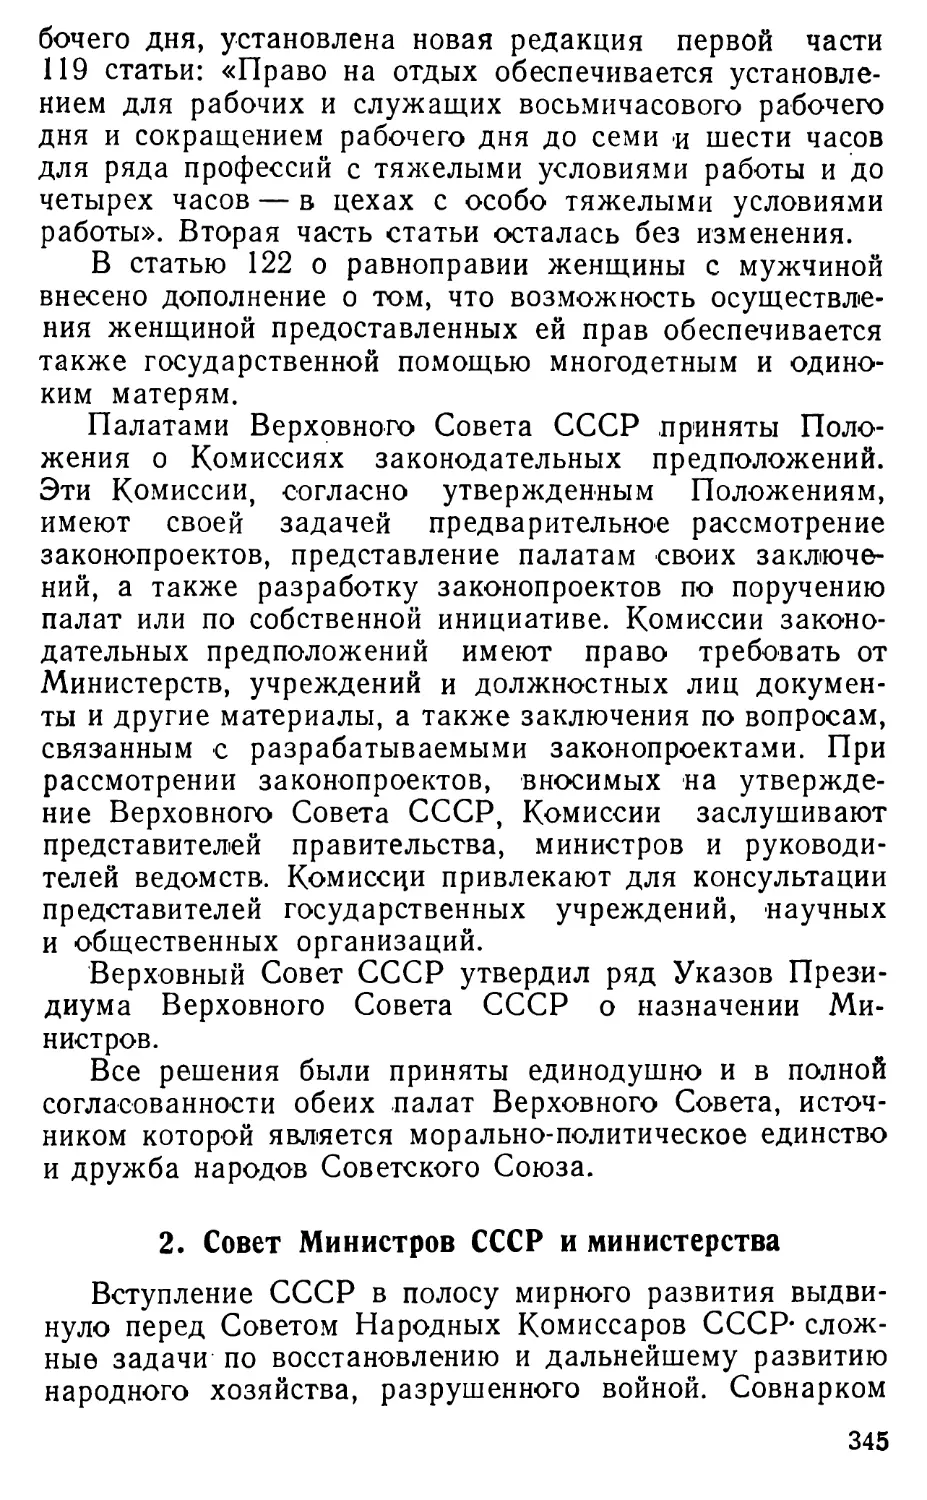 2. Совет Министров СССР и министерства